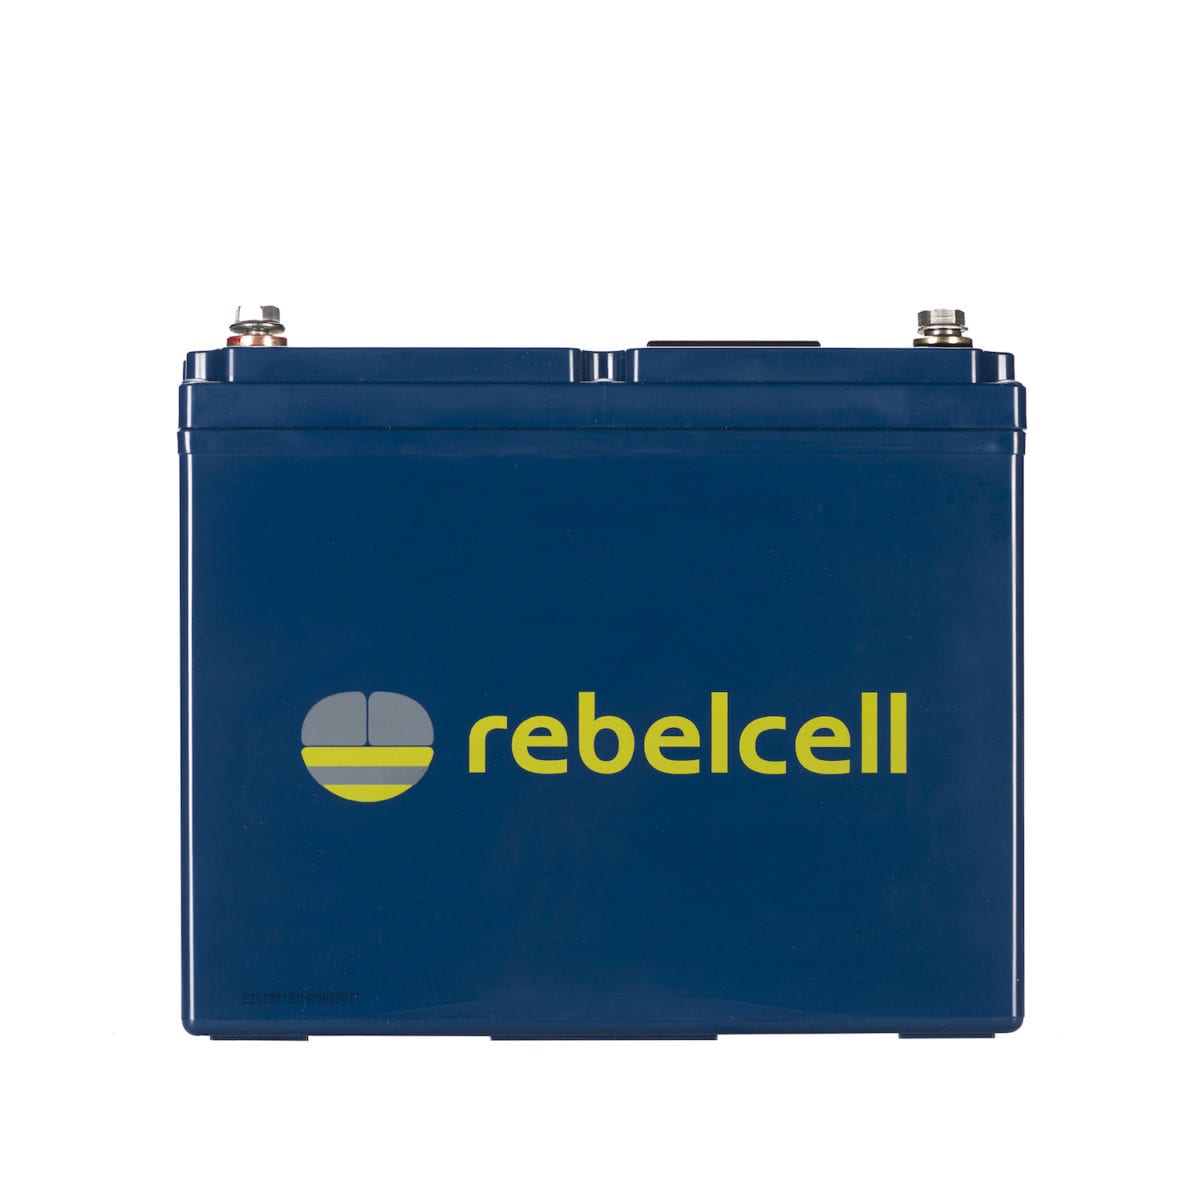 Rebelcell 12V140 AV battery product image